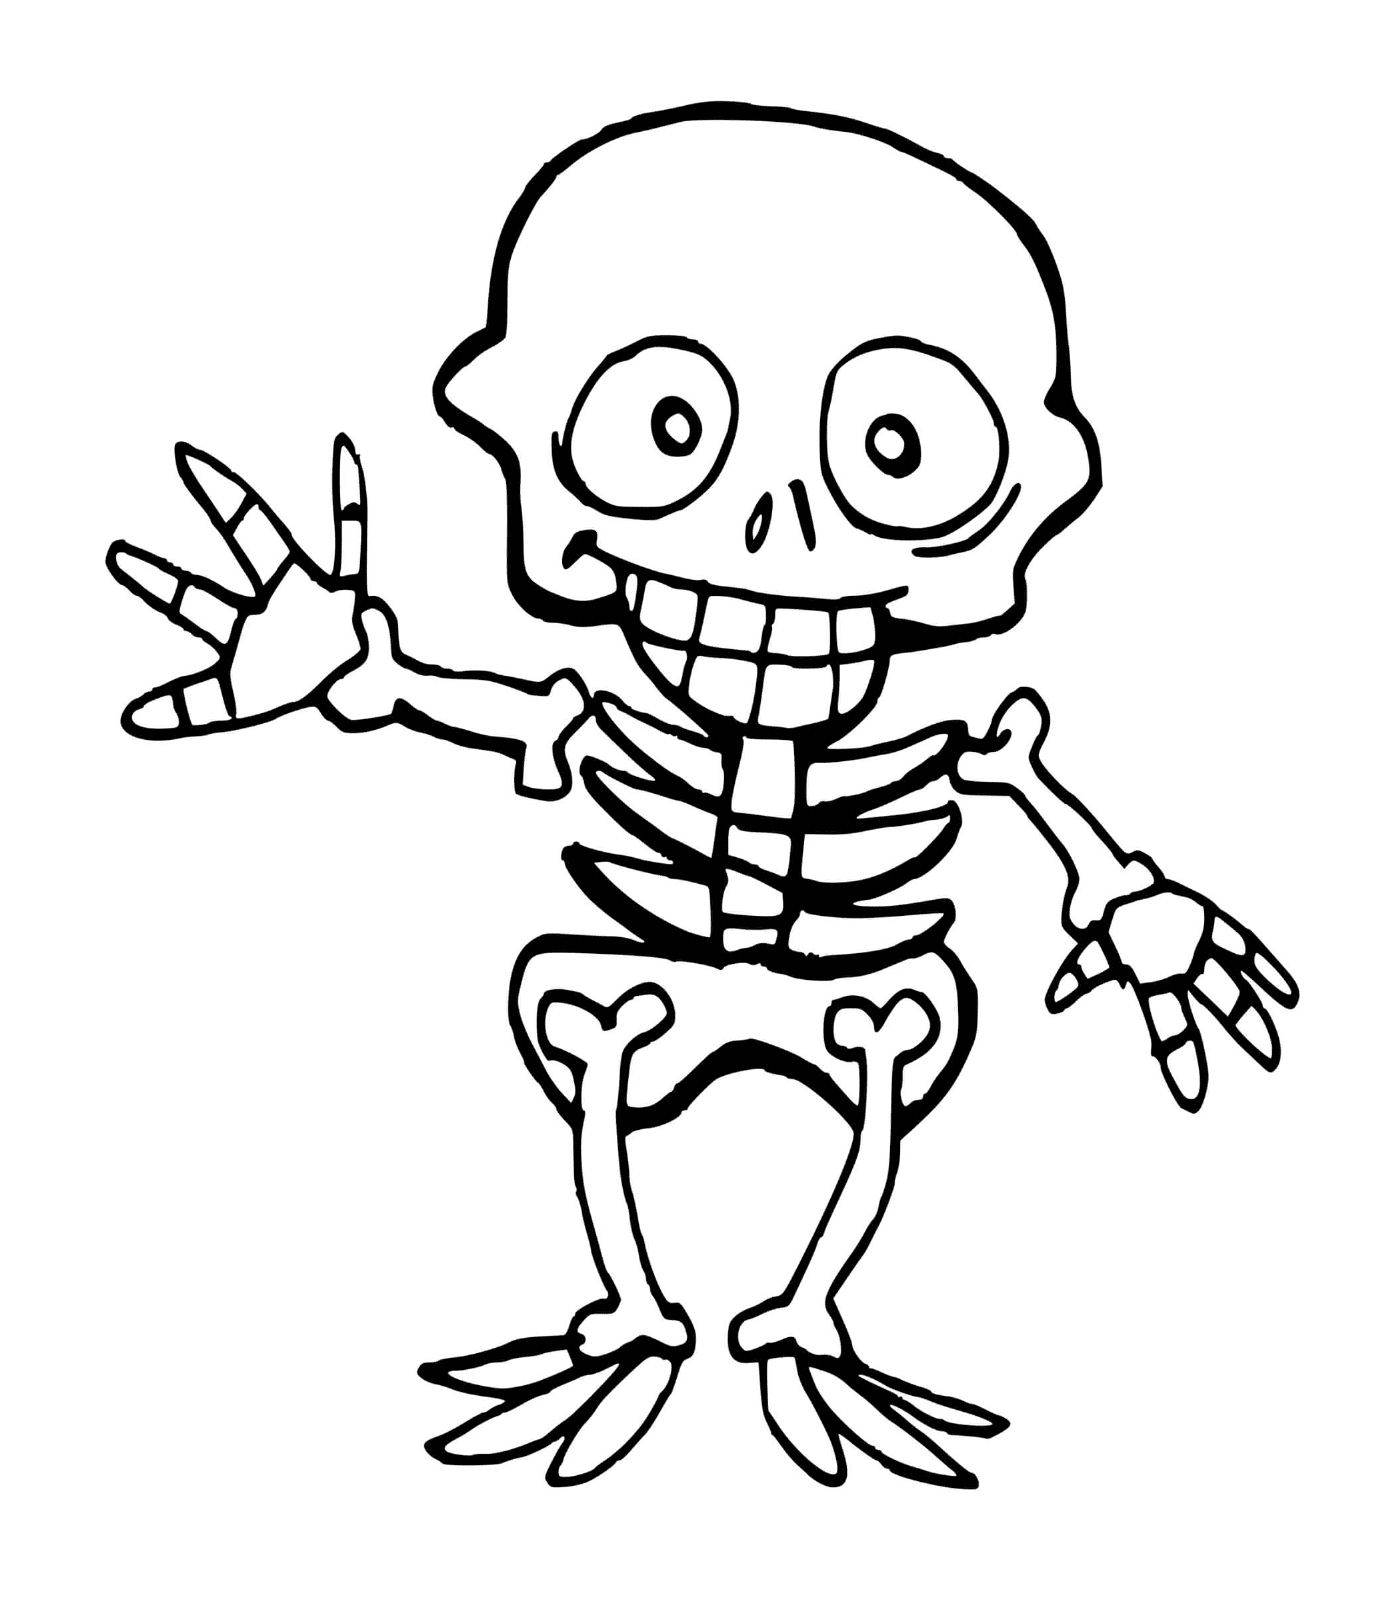   Squelette enfant pour Halloween, mains en l'air 